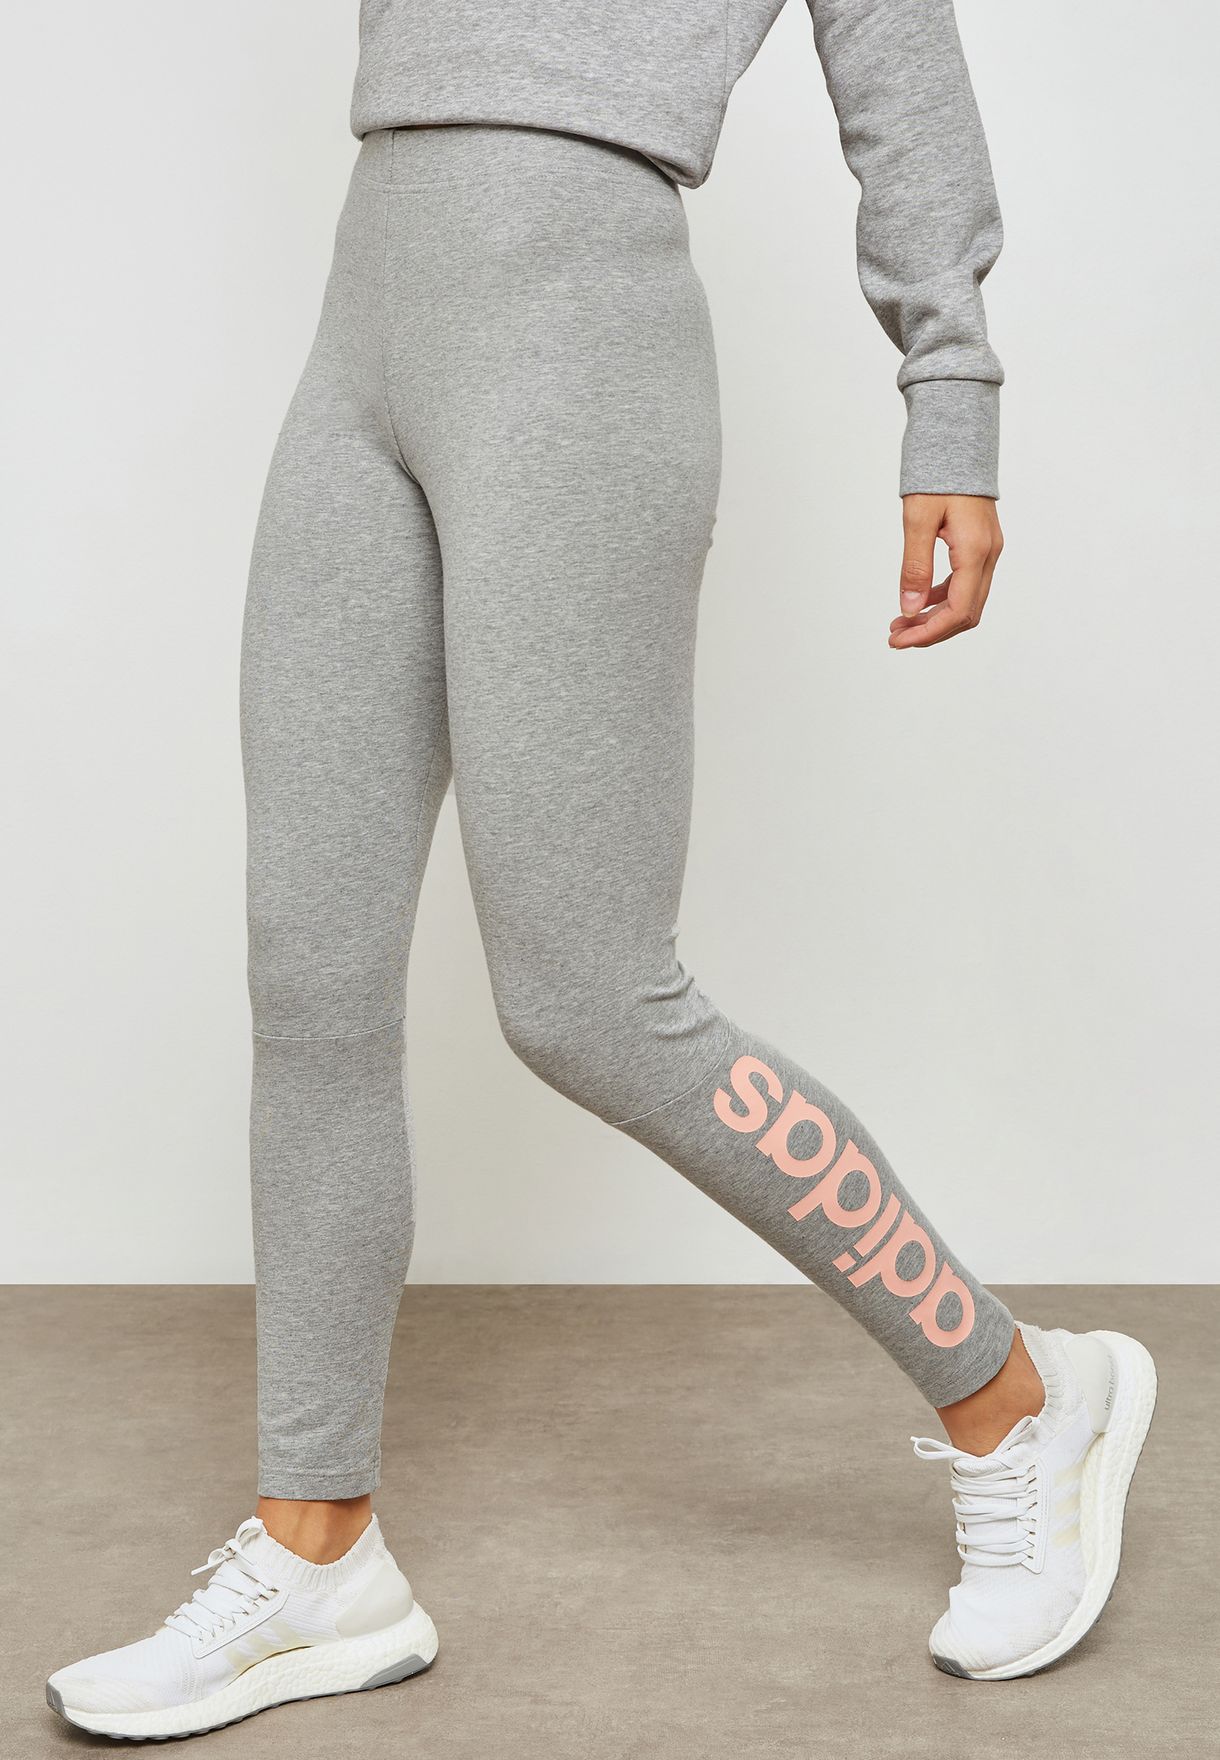 adidas linear leggings grey